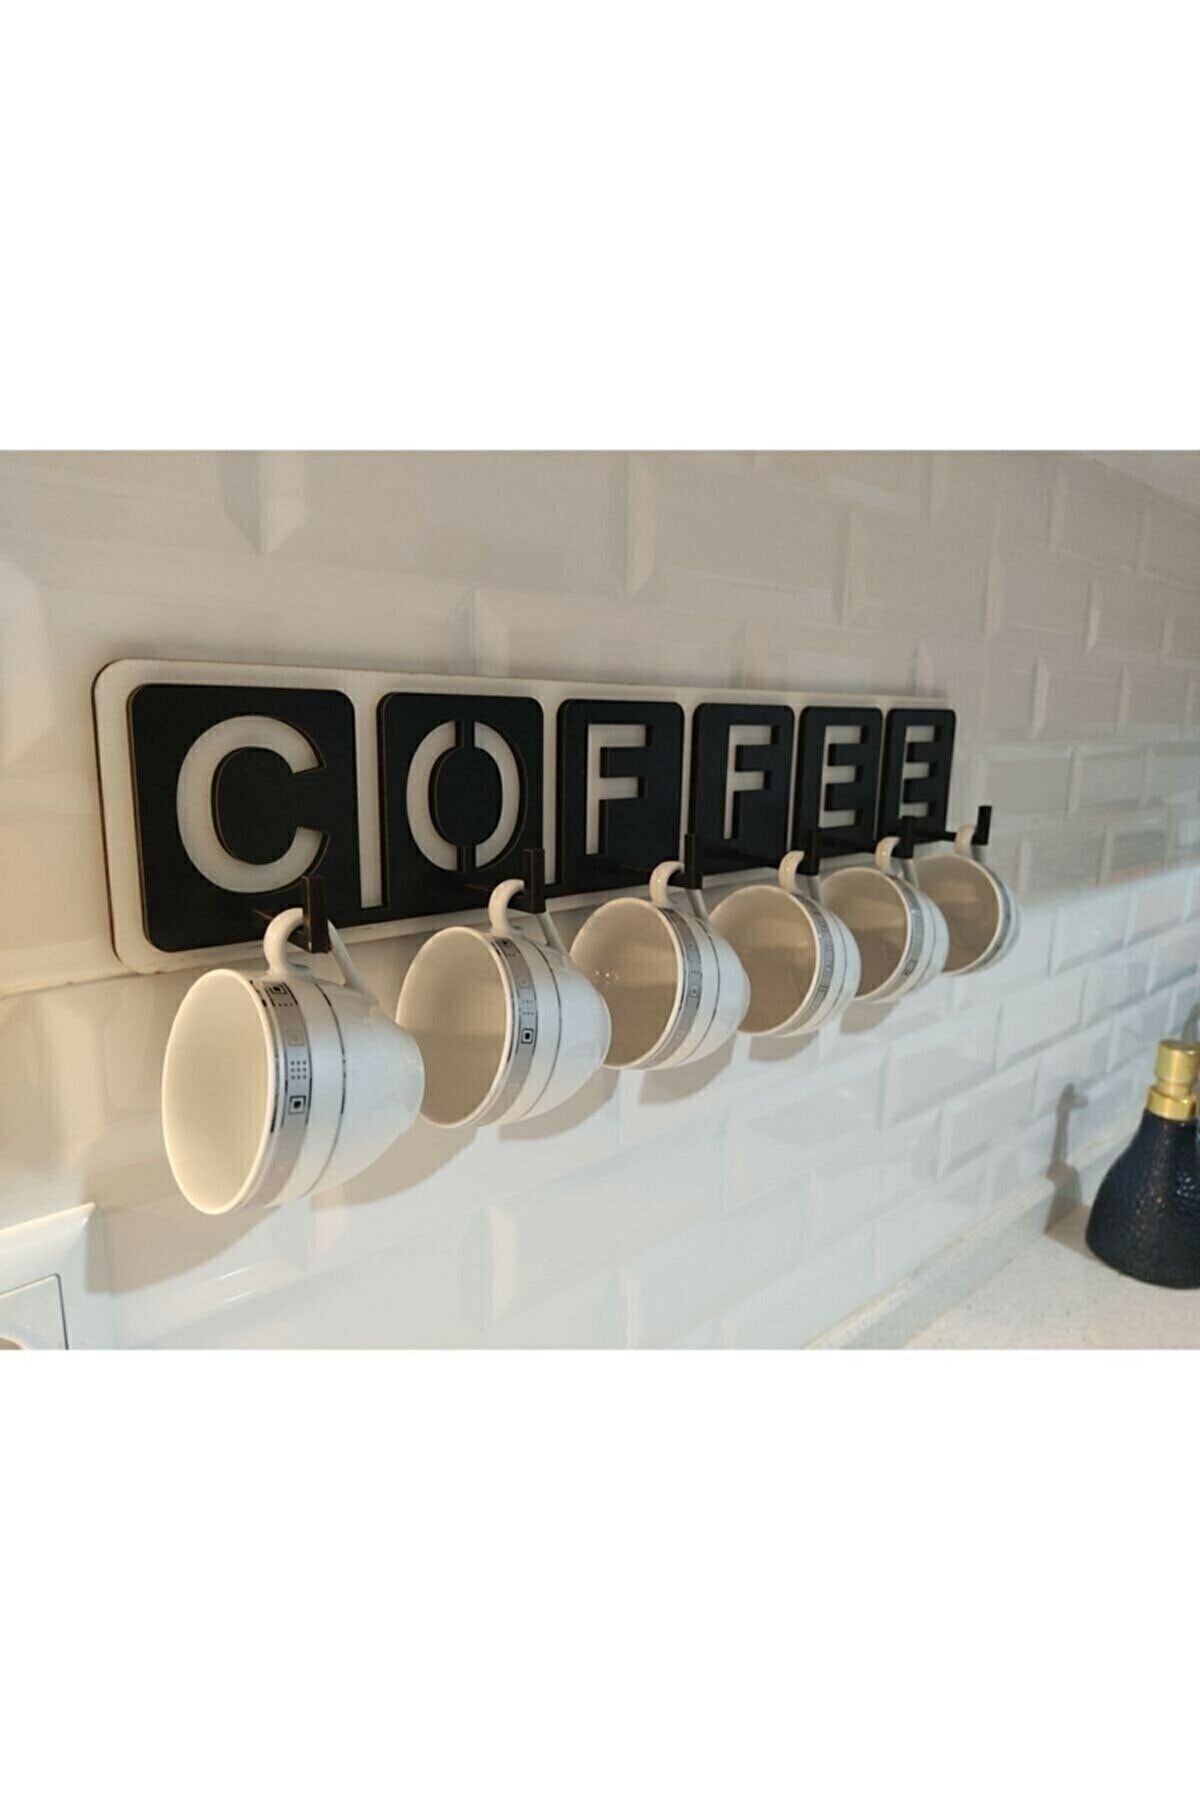 10kdekor Dekoratif Coffee Yazılı Mutfak Fincan Ve Kupa Askılığı 45cm X 10cm Tyc00249756528